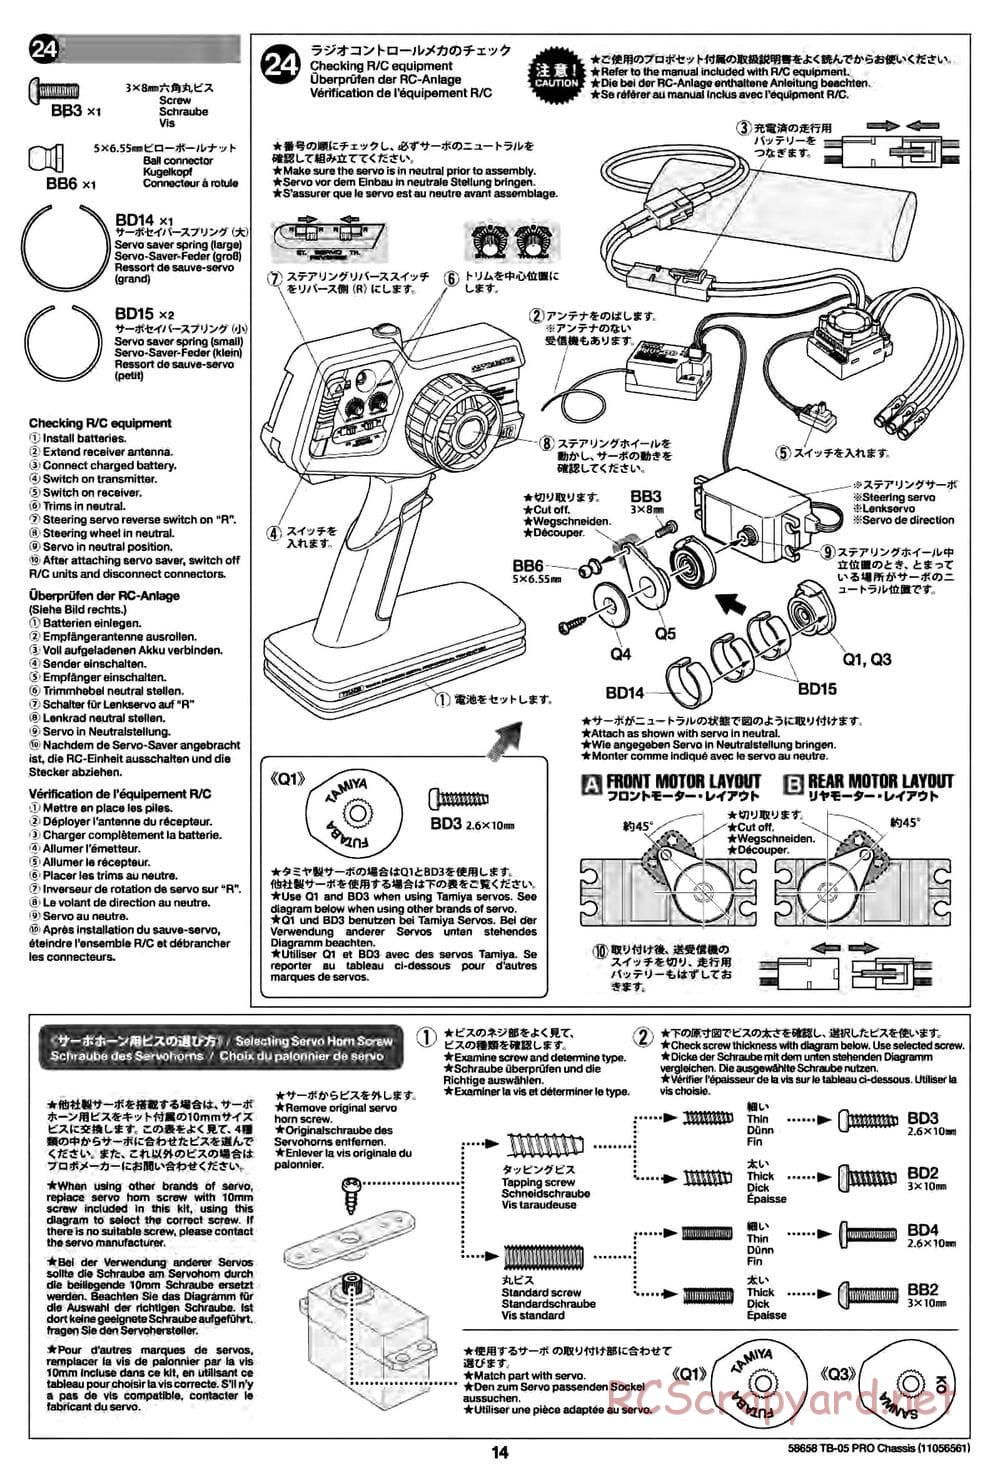 Tamiya - TB-05 Pro Chassis - Manual - Page 14